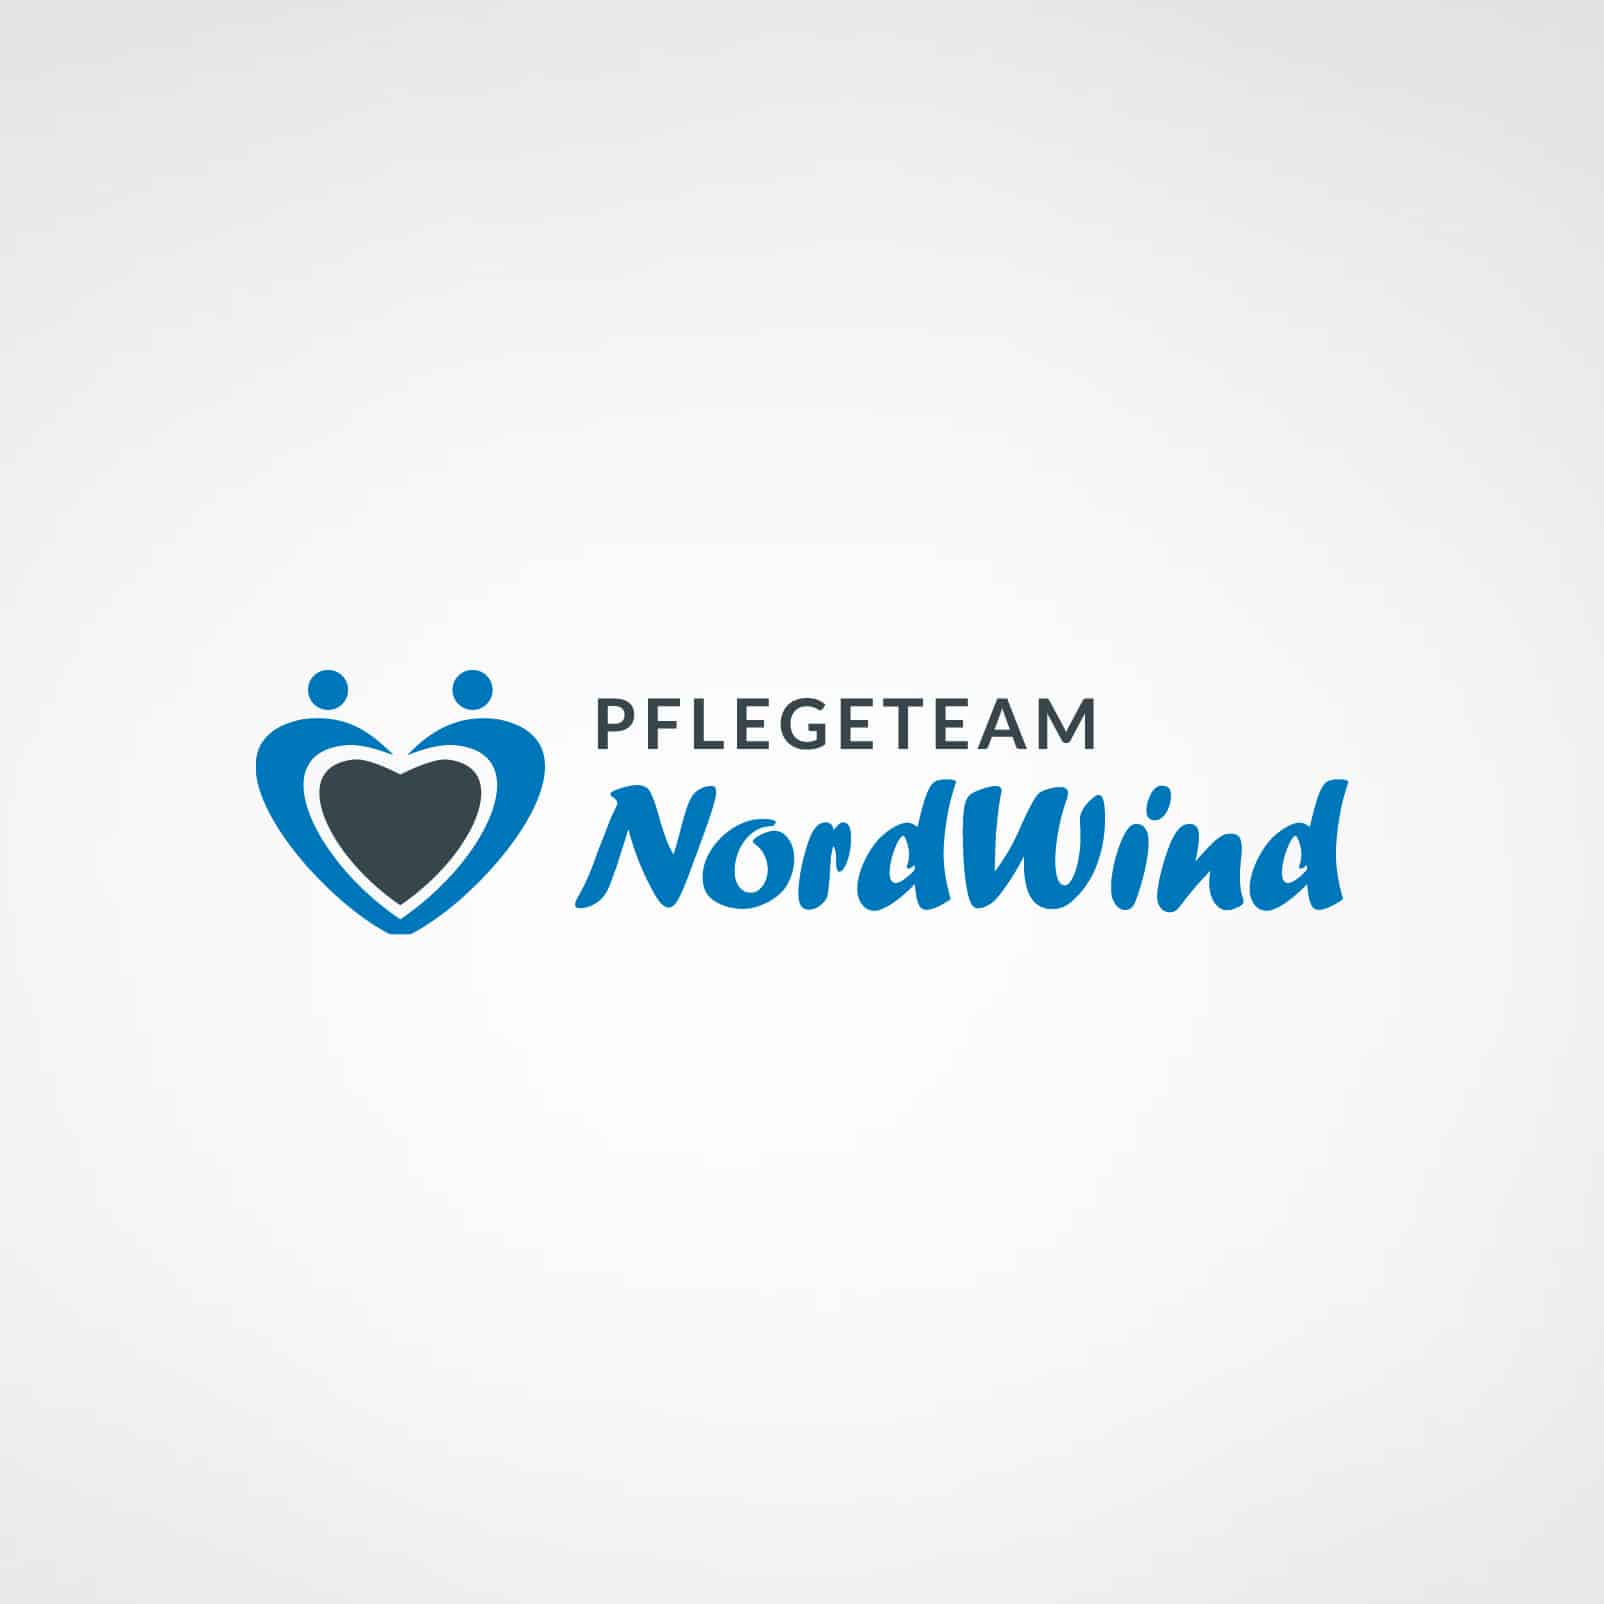 Nordwind-logo-referenzen-designstuuv-kunden